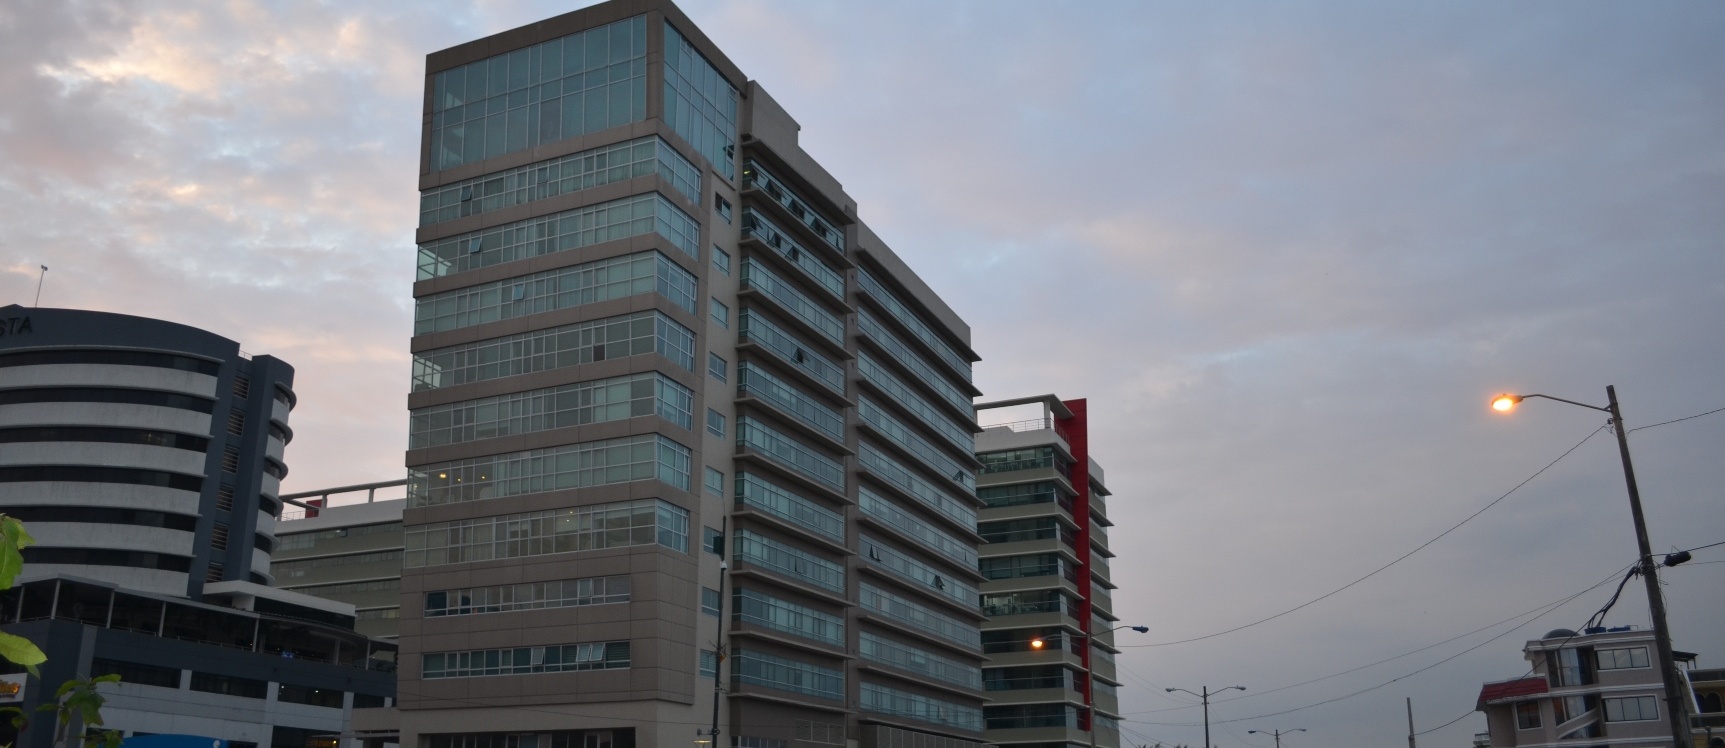 GeoBienes - Suite en alquiler en edificio Elite Building sector Mall del Sol - Plusvalia Guayaquil Casas de venta y alquiler Inmobiliaria Ecuador